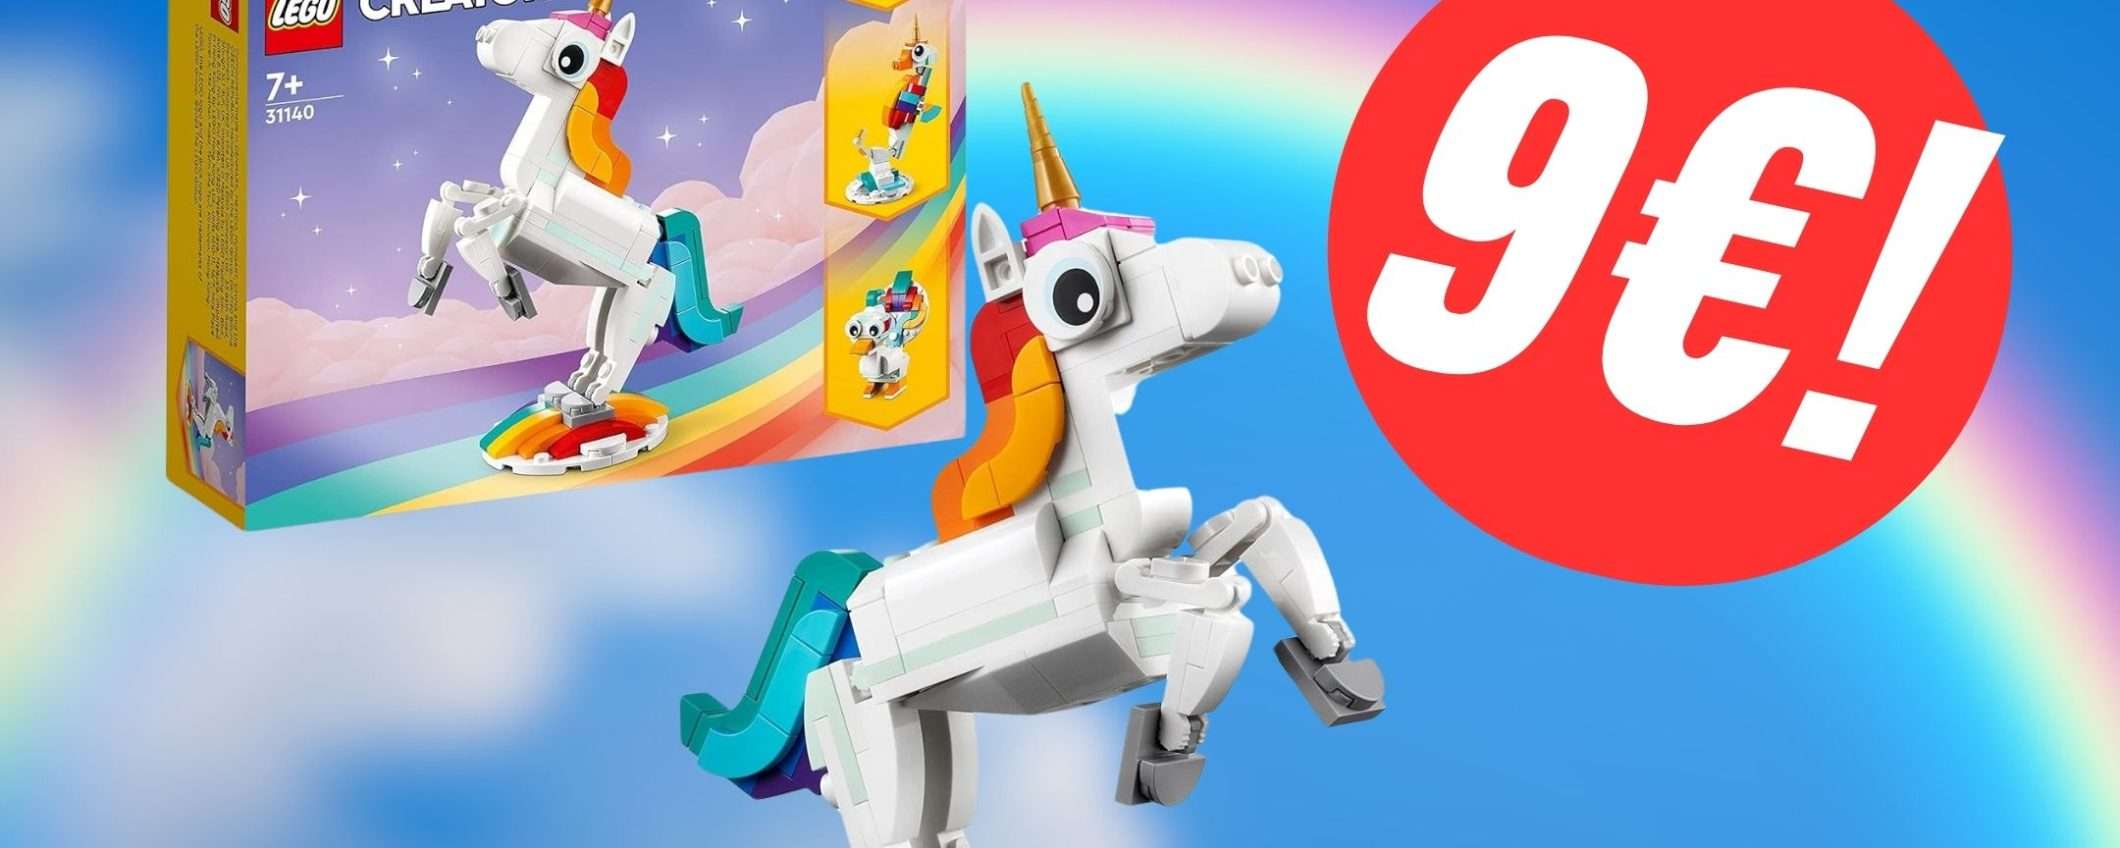 Il magnifico Unicorno LEGO costa solo 9€!